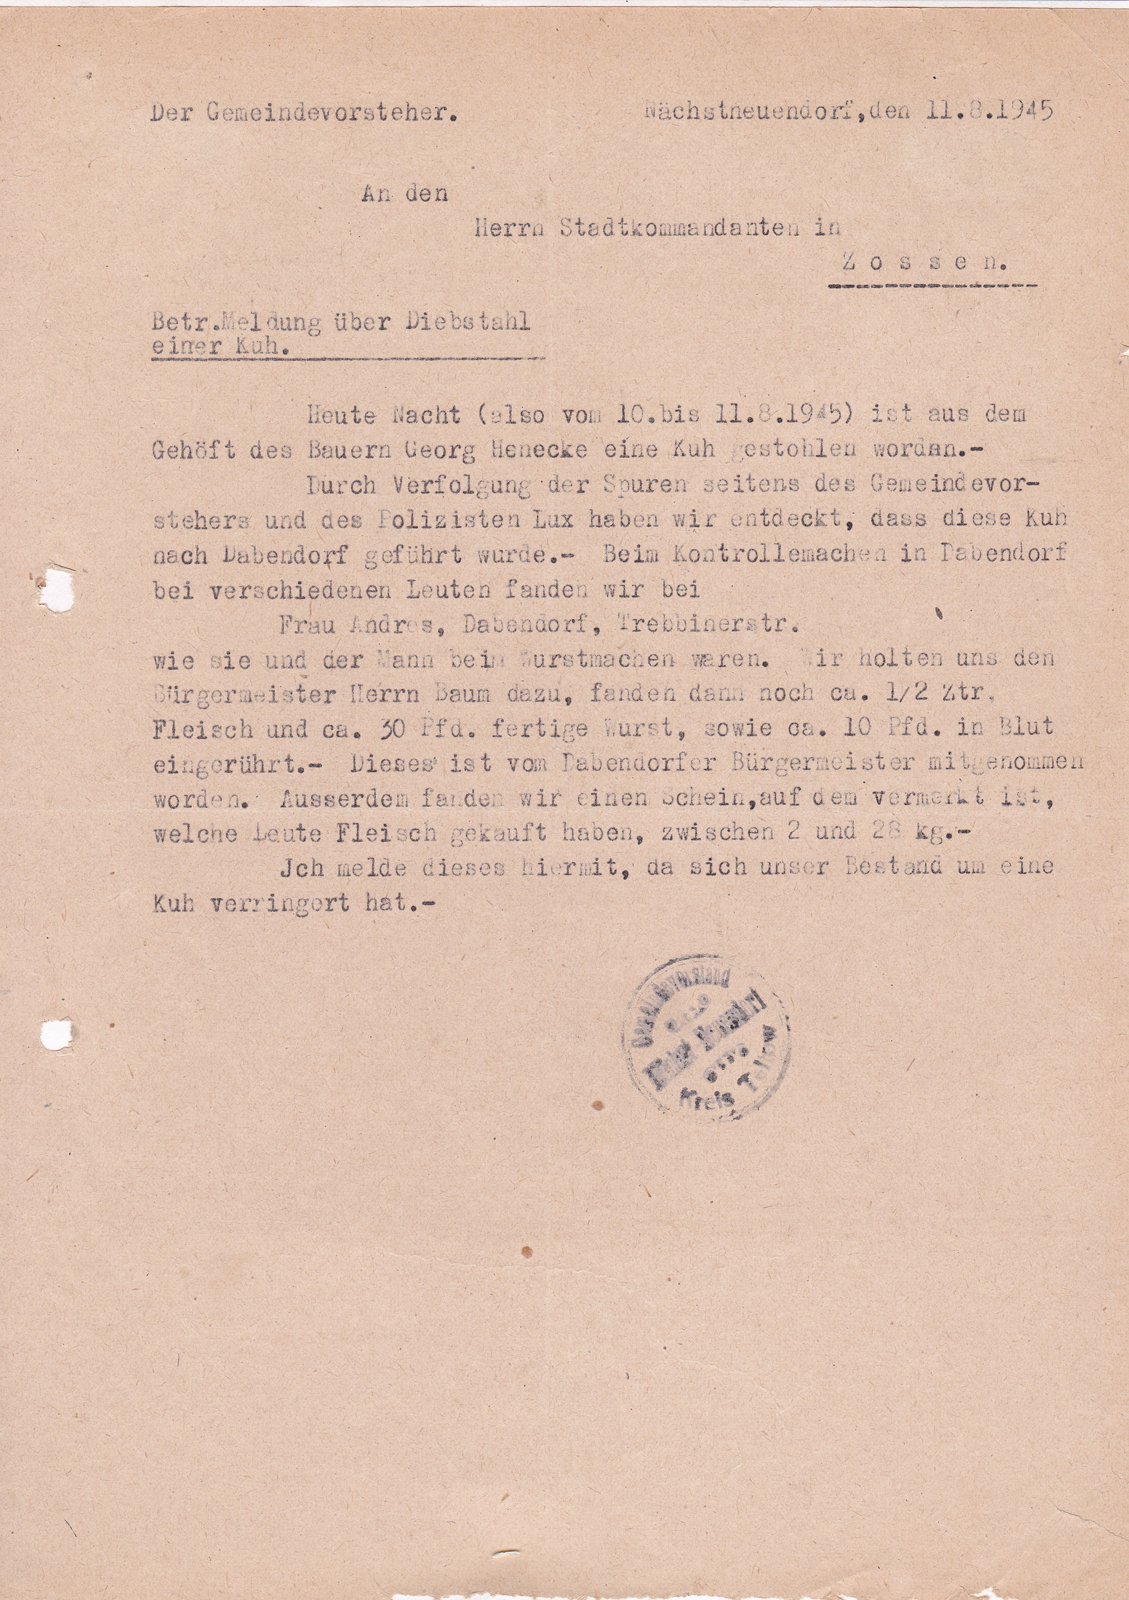 BM an Stadtkommandant, 11.08.1945 (Heimatverein "Alter Krug" Zossen e.V. CC BY-NC-SA)